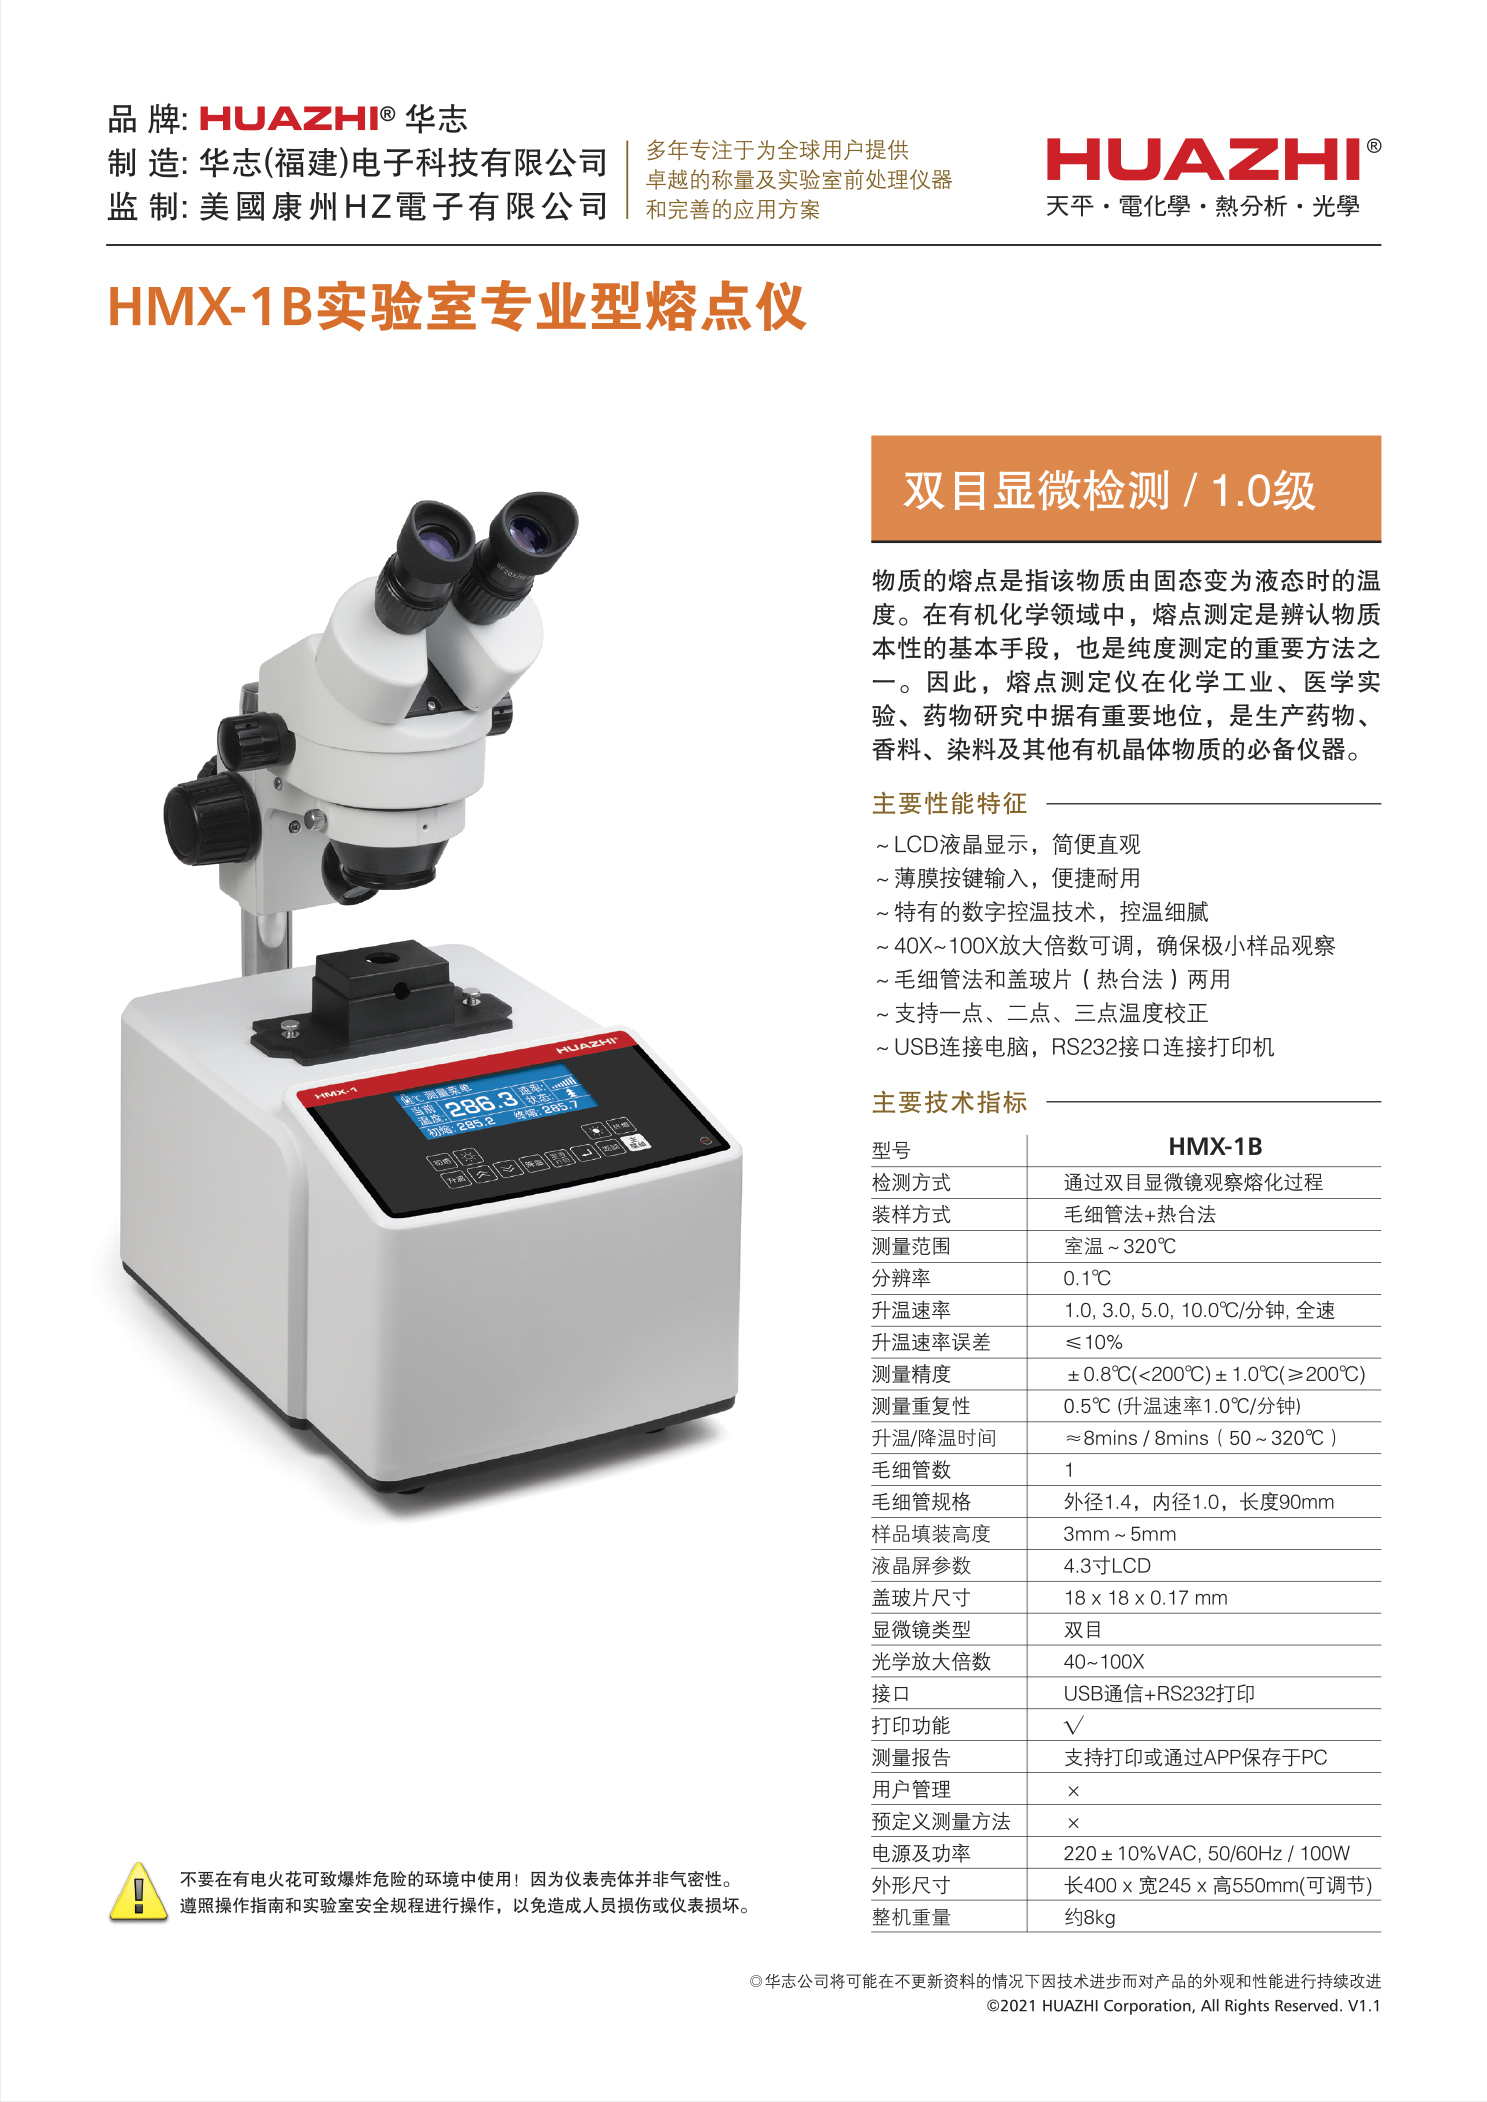 熔點儀HMX-1B單機詳情(中文v1.1).jpg